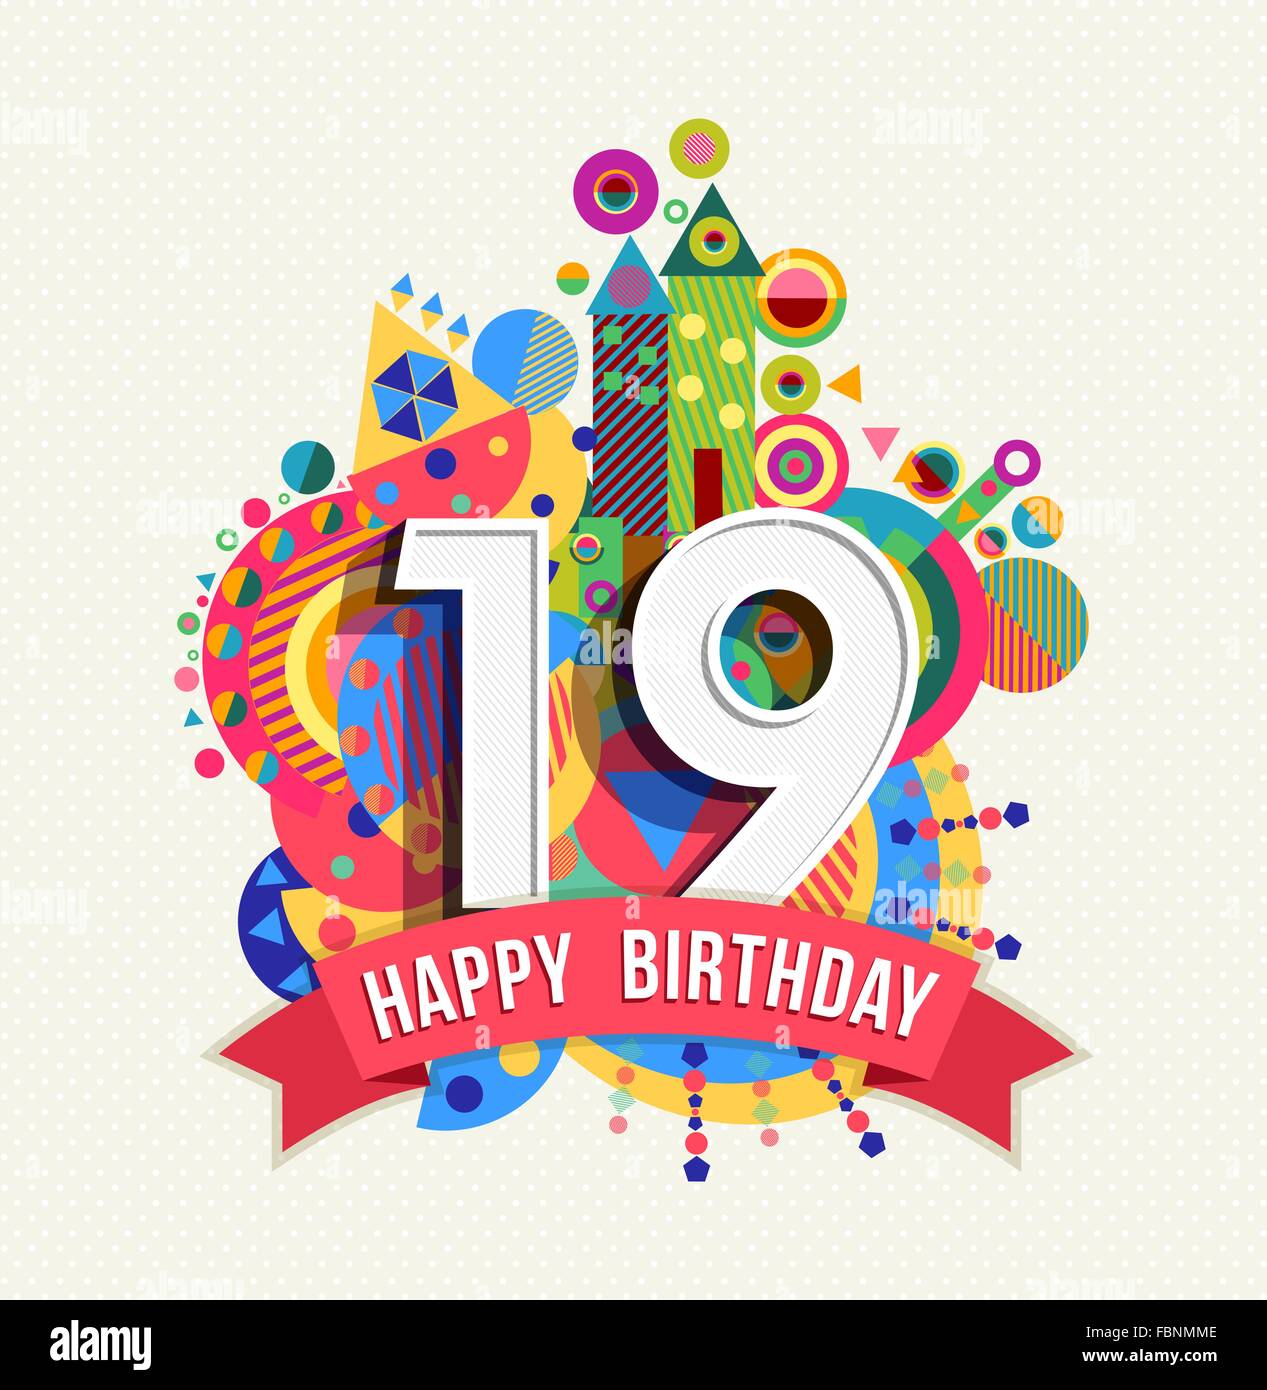 Happy Birthday neunzehn 19 Jahr Spaß Feier Grußkarte mit Nummer, Beschriftung und bunten Geometriekonstruktion. EPS10 Stock Vektor